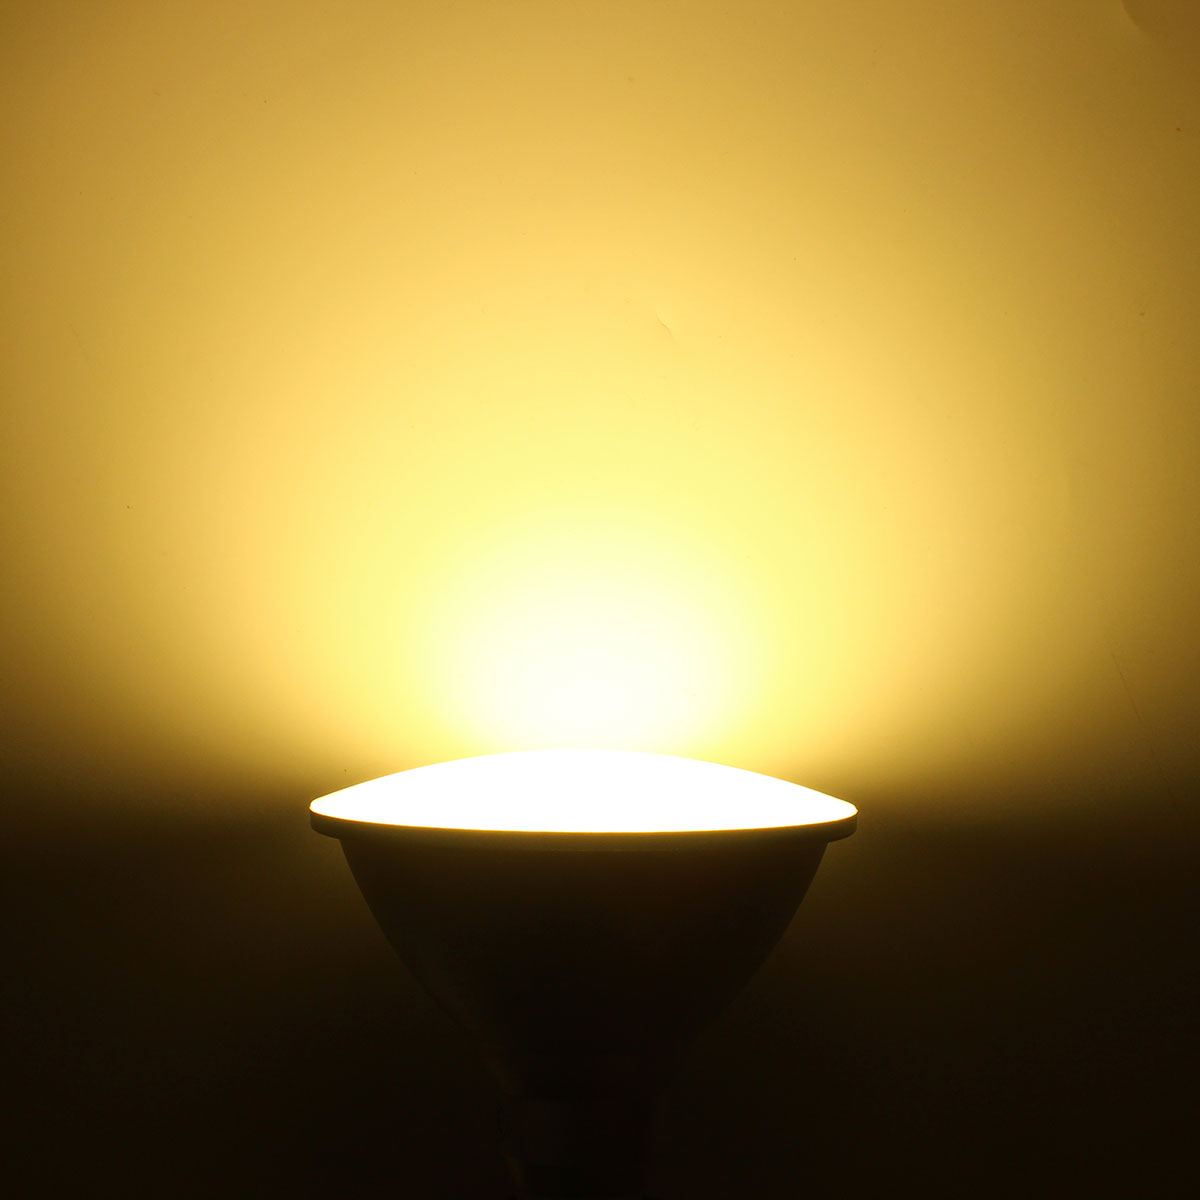 Dimmable-E27-15W-900Lm-LED-Spotlightt-Bulb-PAR38-IP65-Lamp-White-Warm-White-Natural-White-AC220V-1070561